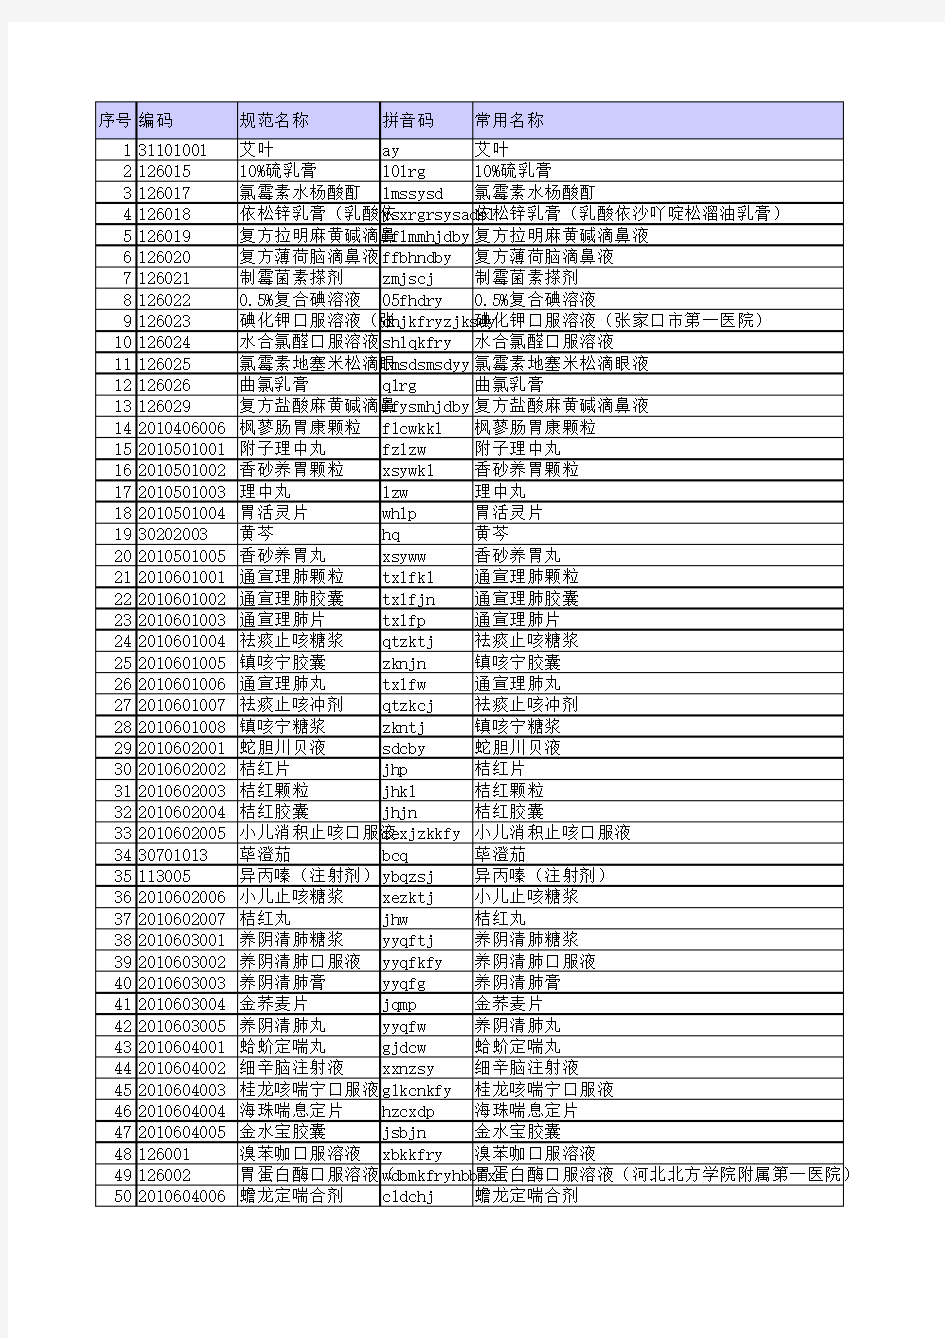 最新药品字典(全集)(12-12-07)